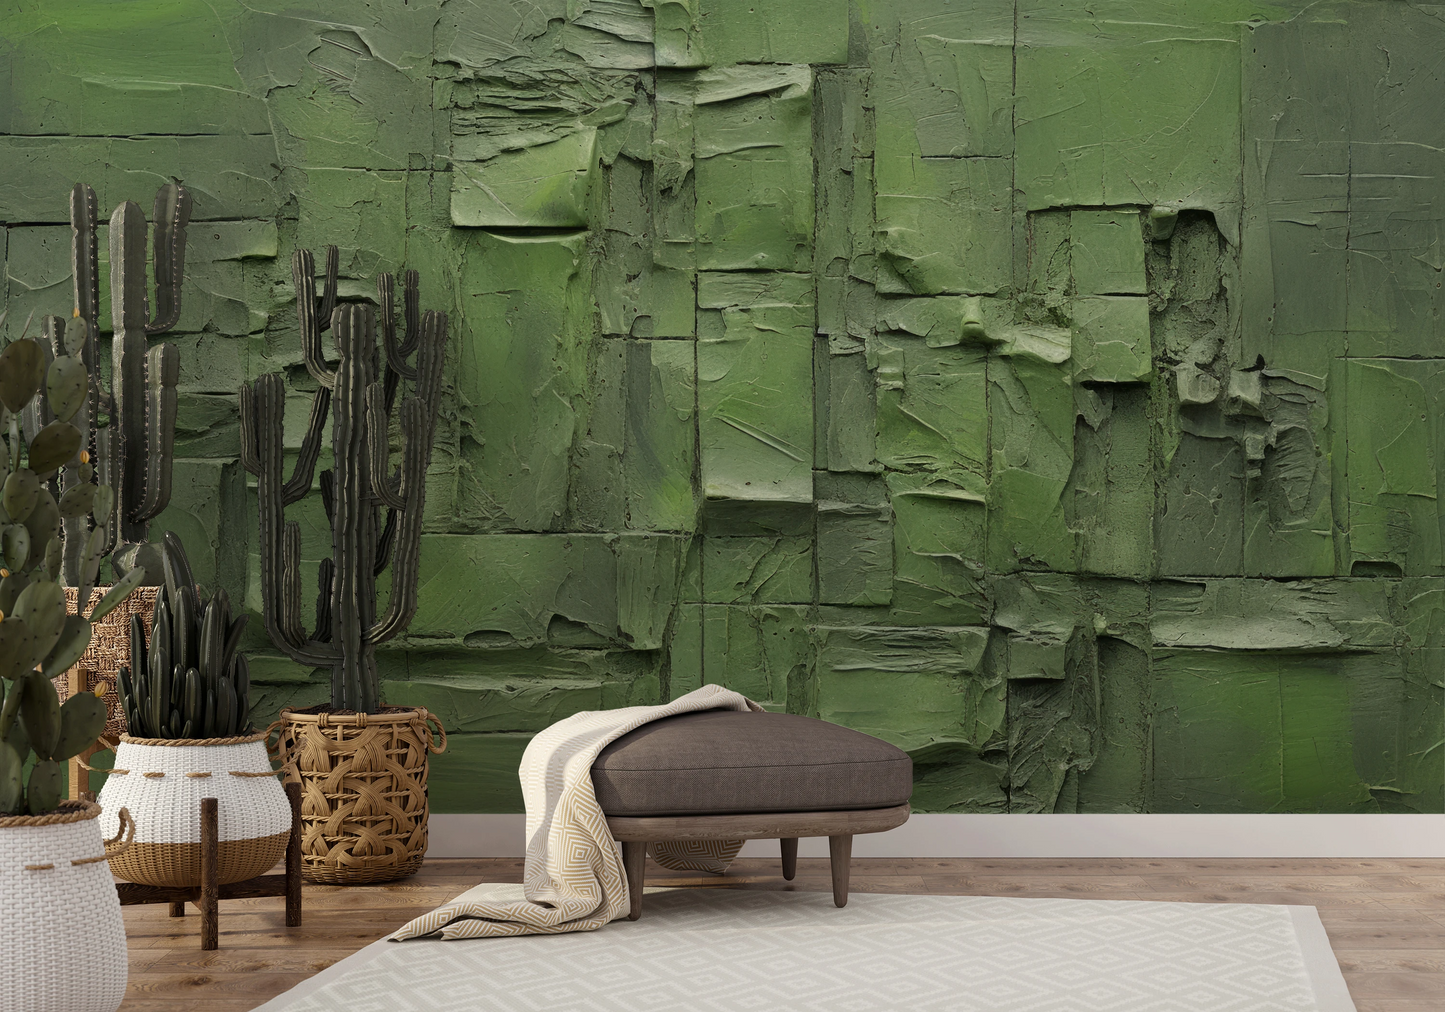 Wzór fototapety artystycznej o nazwie Green Patchwork pokazanej w aranżacji wnętrza.